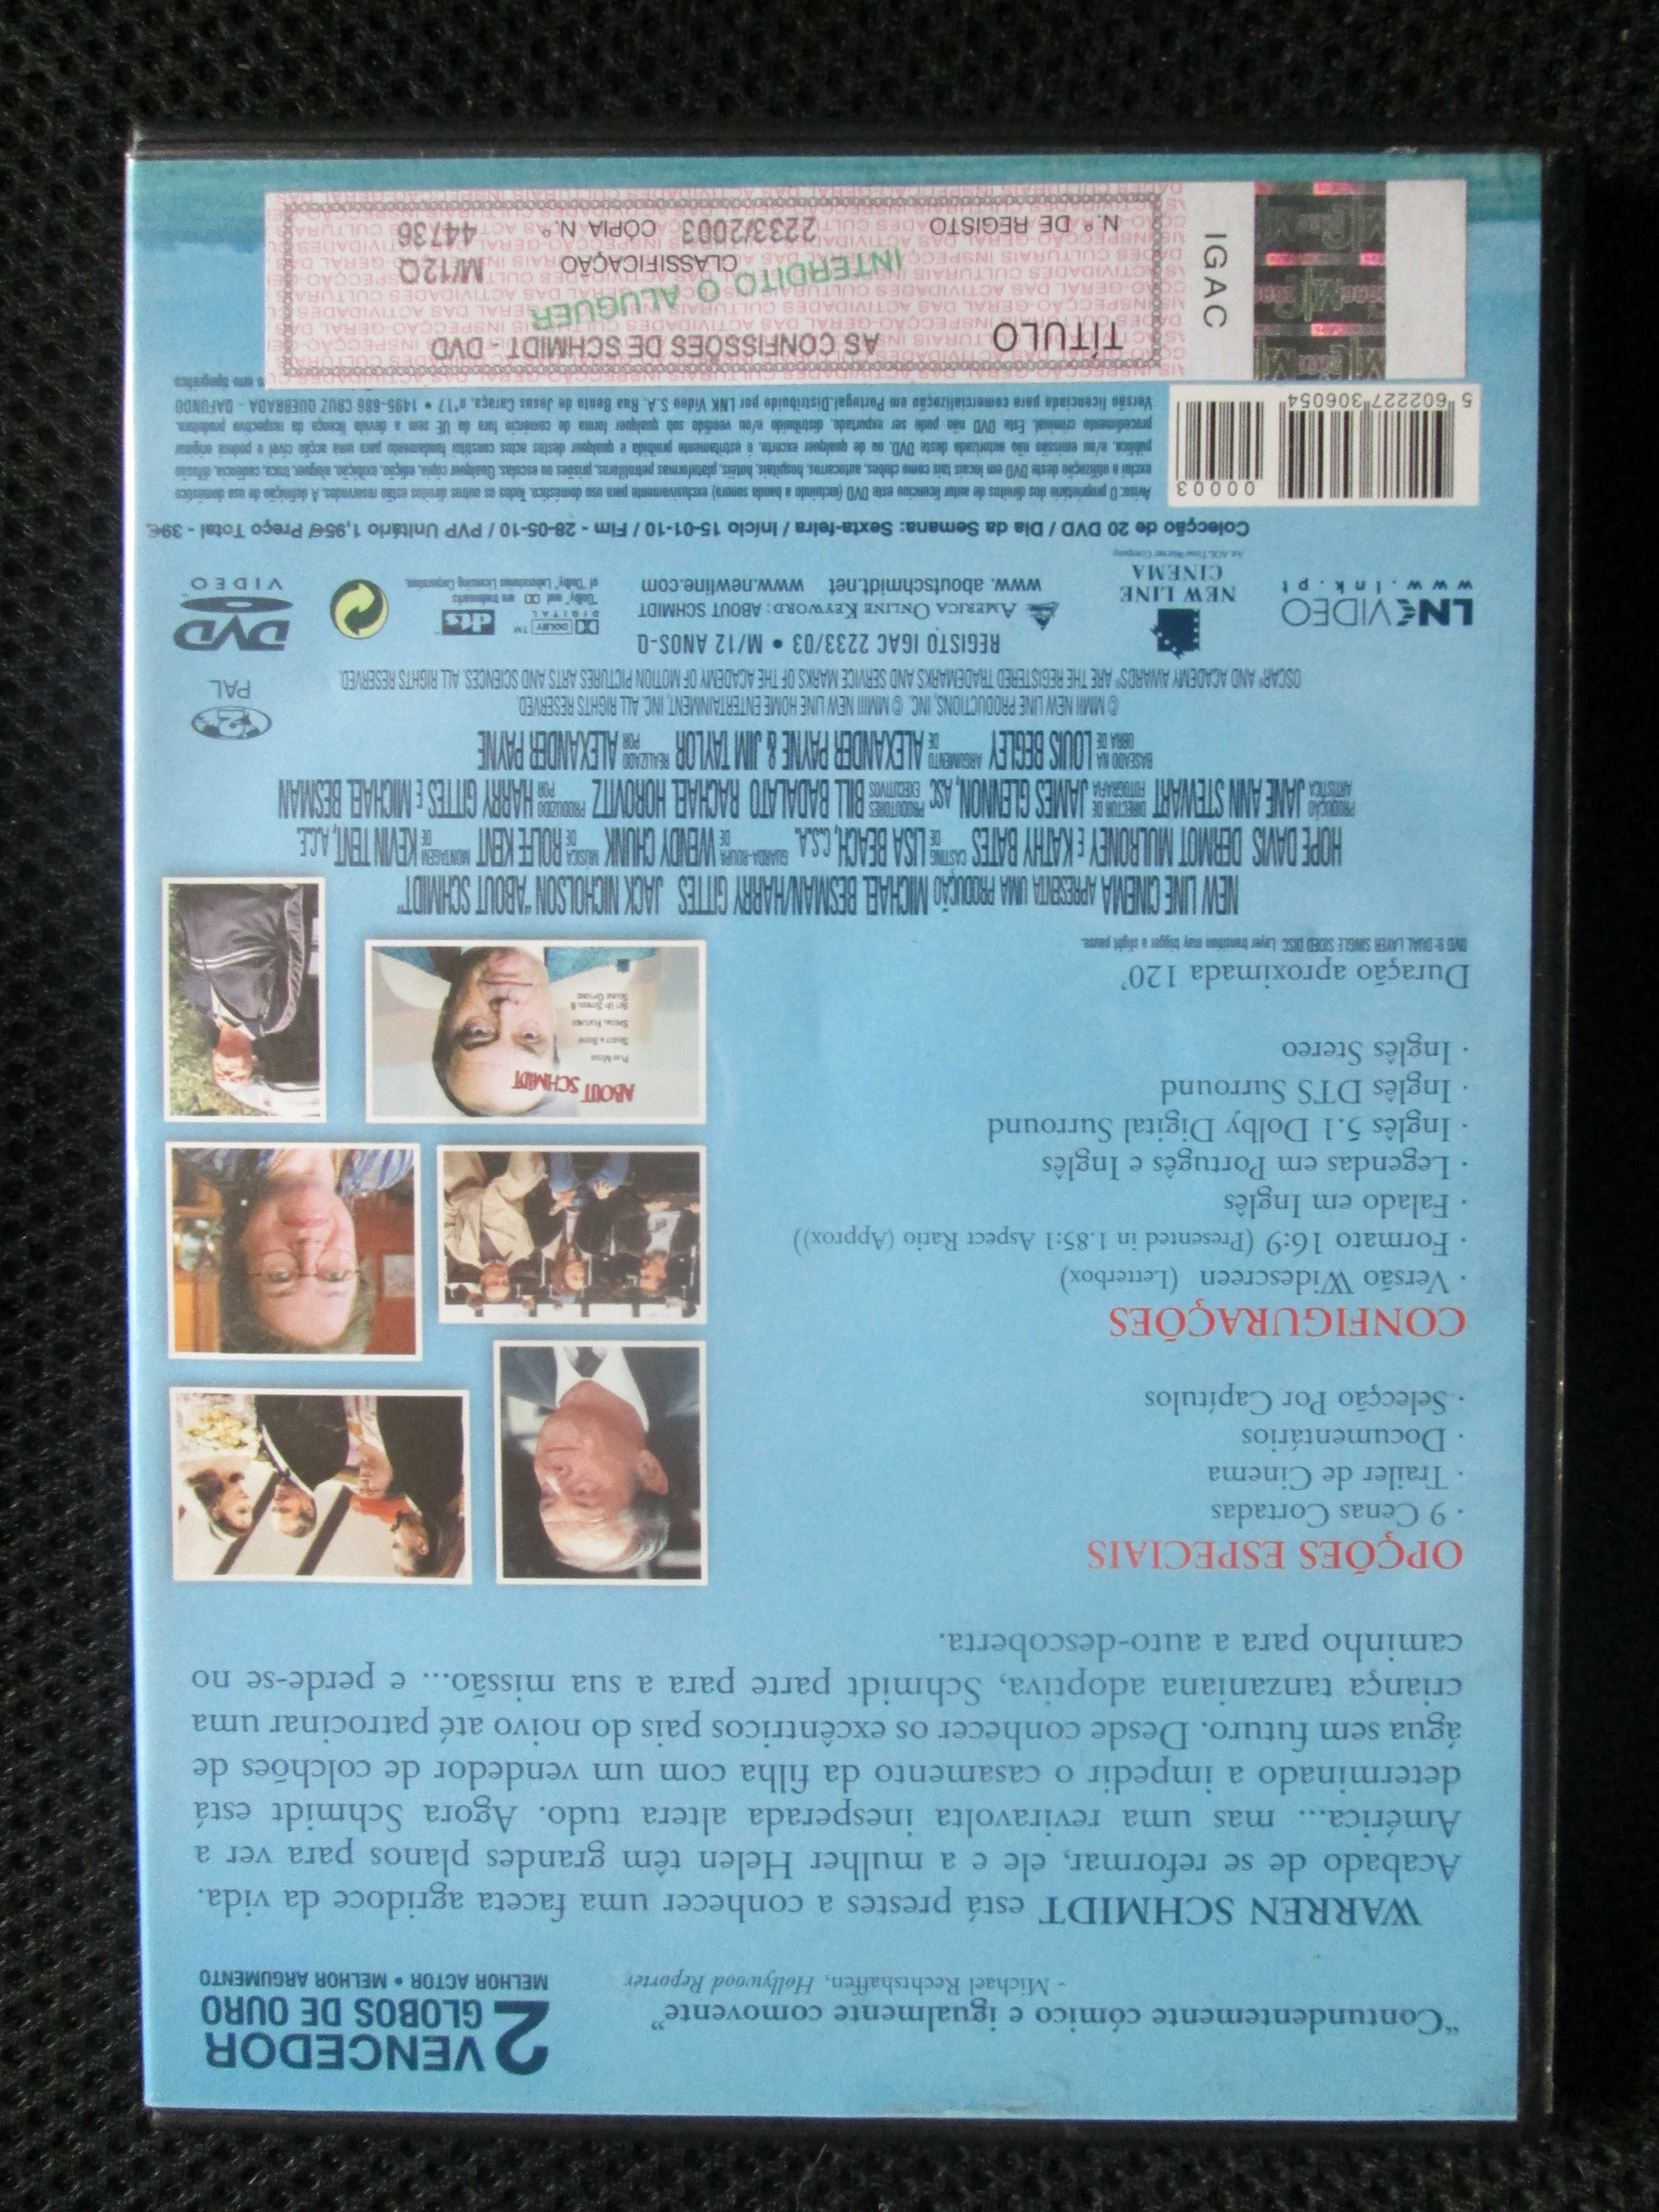 DVD - As Confissões de Schmidt, Kathy Bates, Jack Nicholson